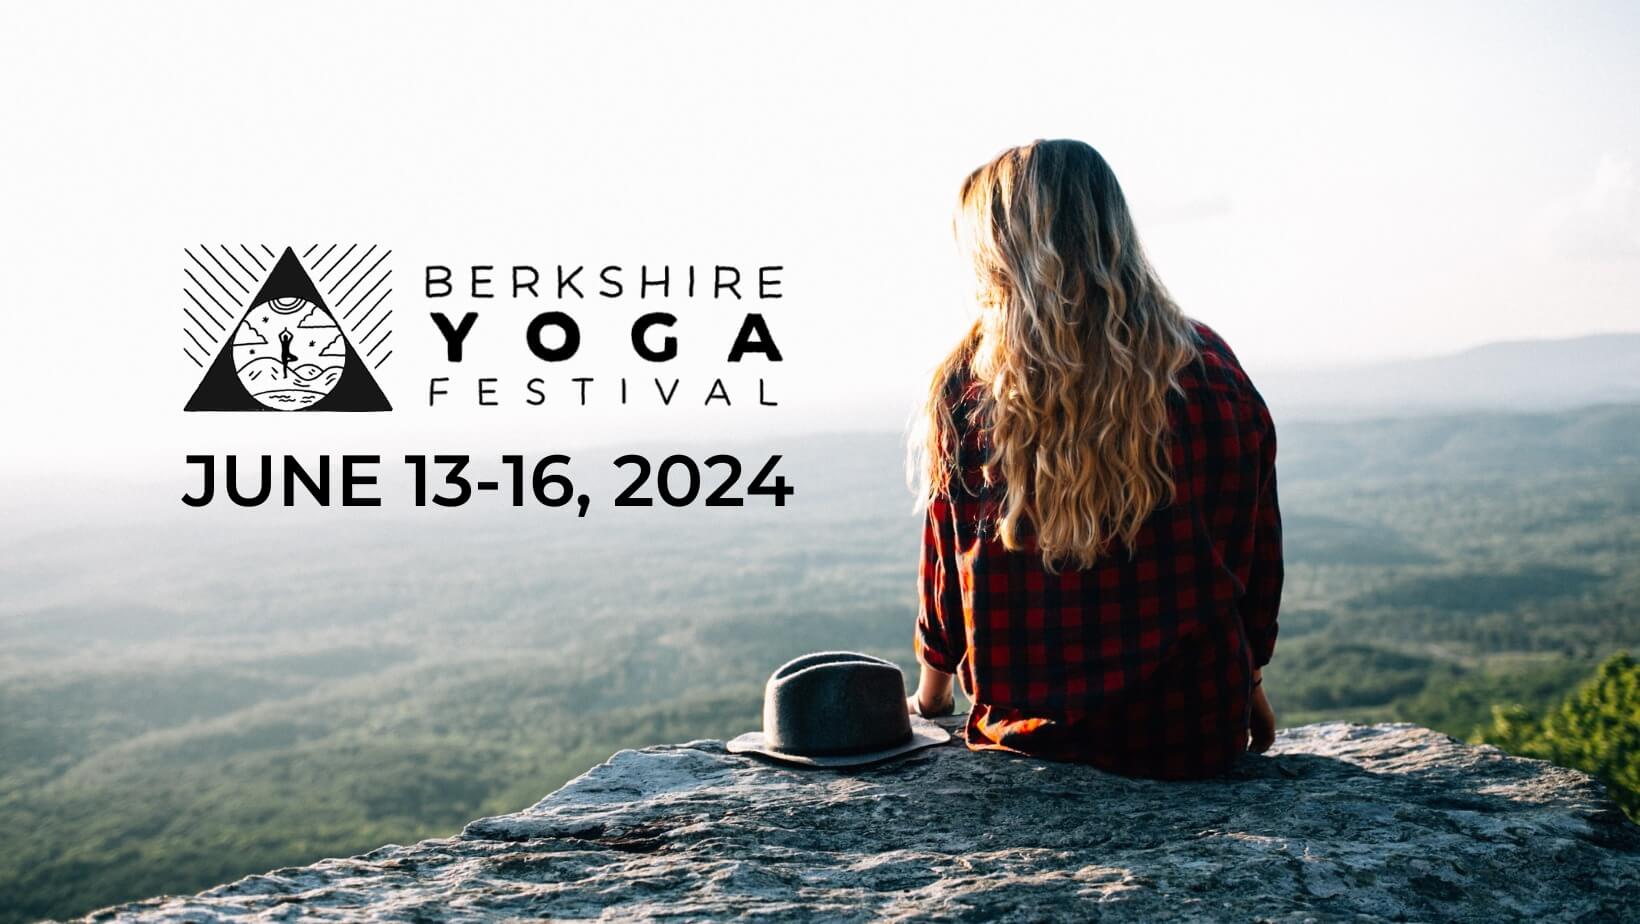 Berkshire Yoga Festival